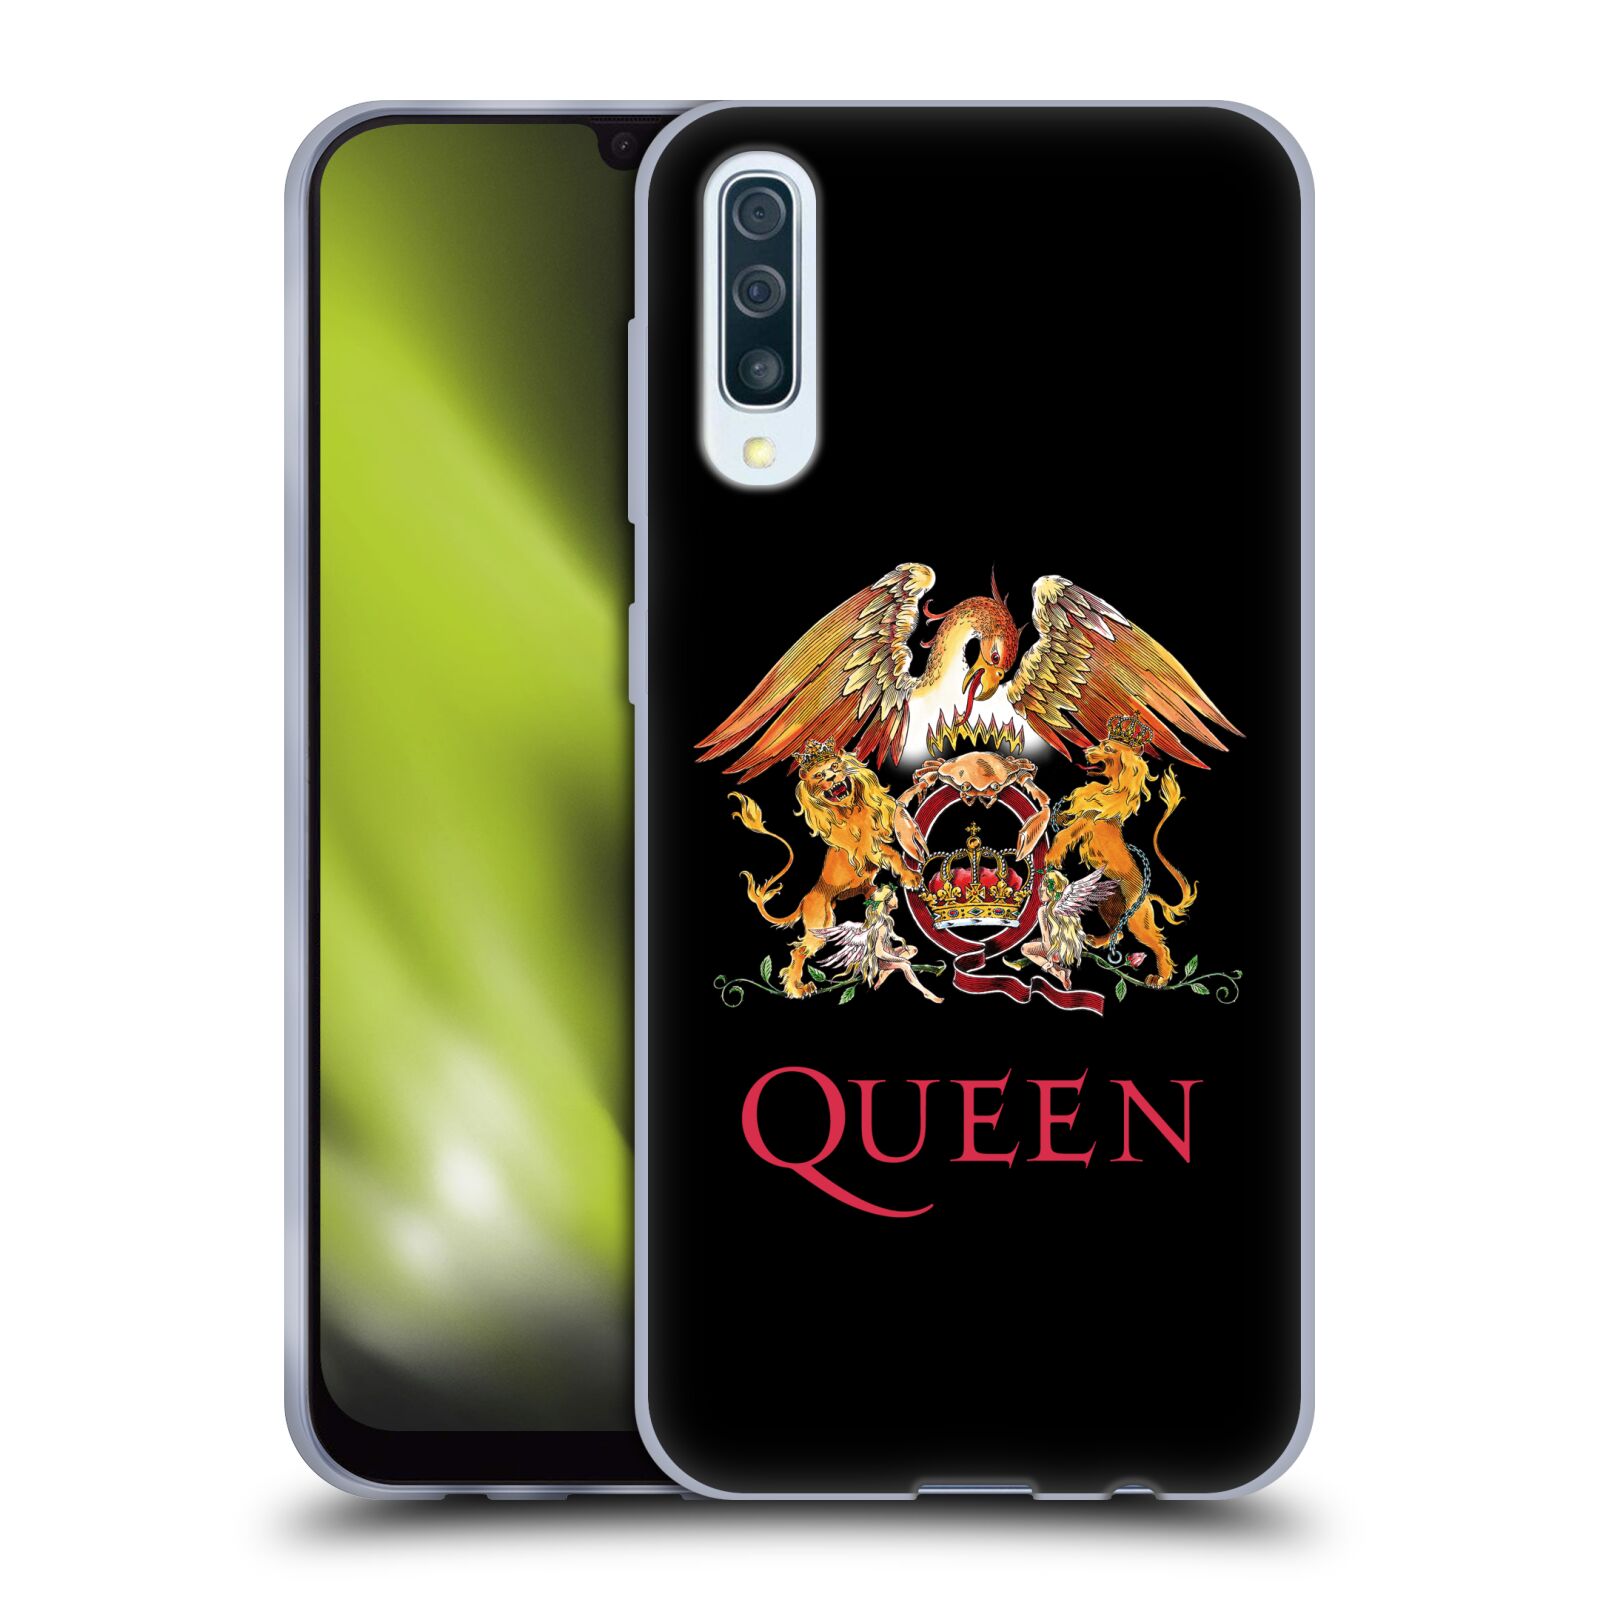 Silikonové pouzdro na mobil Samsung Galaxy A50 / A30s - Head Case - Queen - Logo (Silikonový kryt, obal, pouzdro na mobilní telefon Samsung Galaxy A50 / A30s z roku 2019 s motivem Queen - Logo)